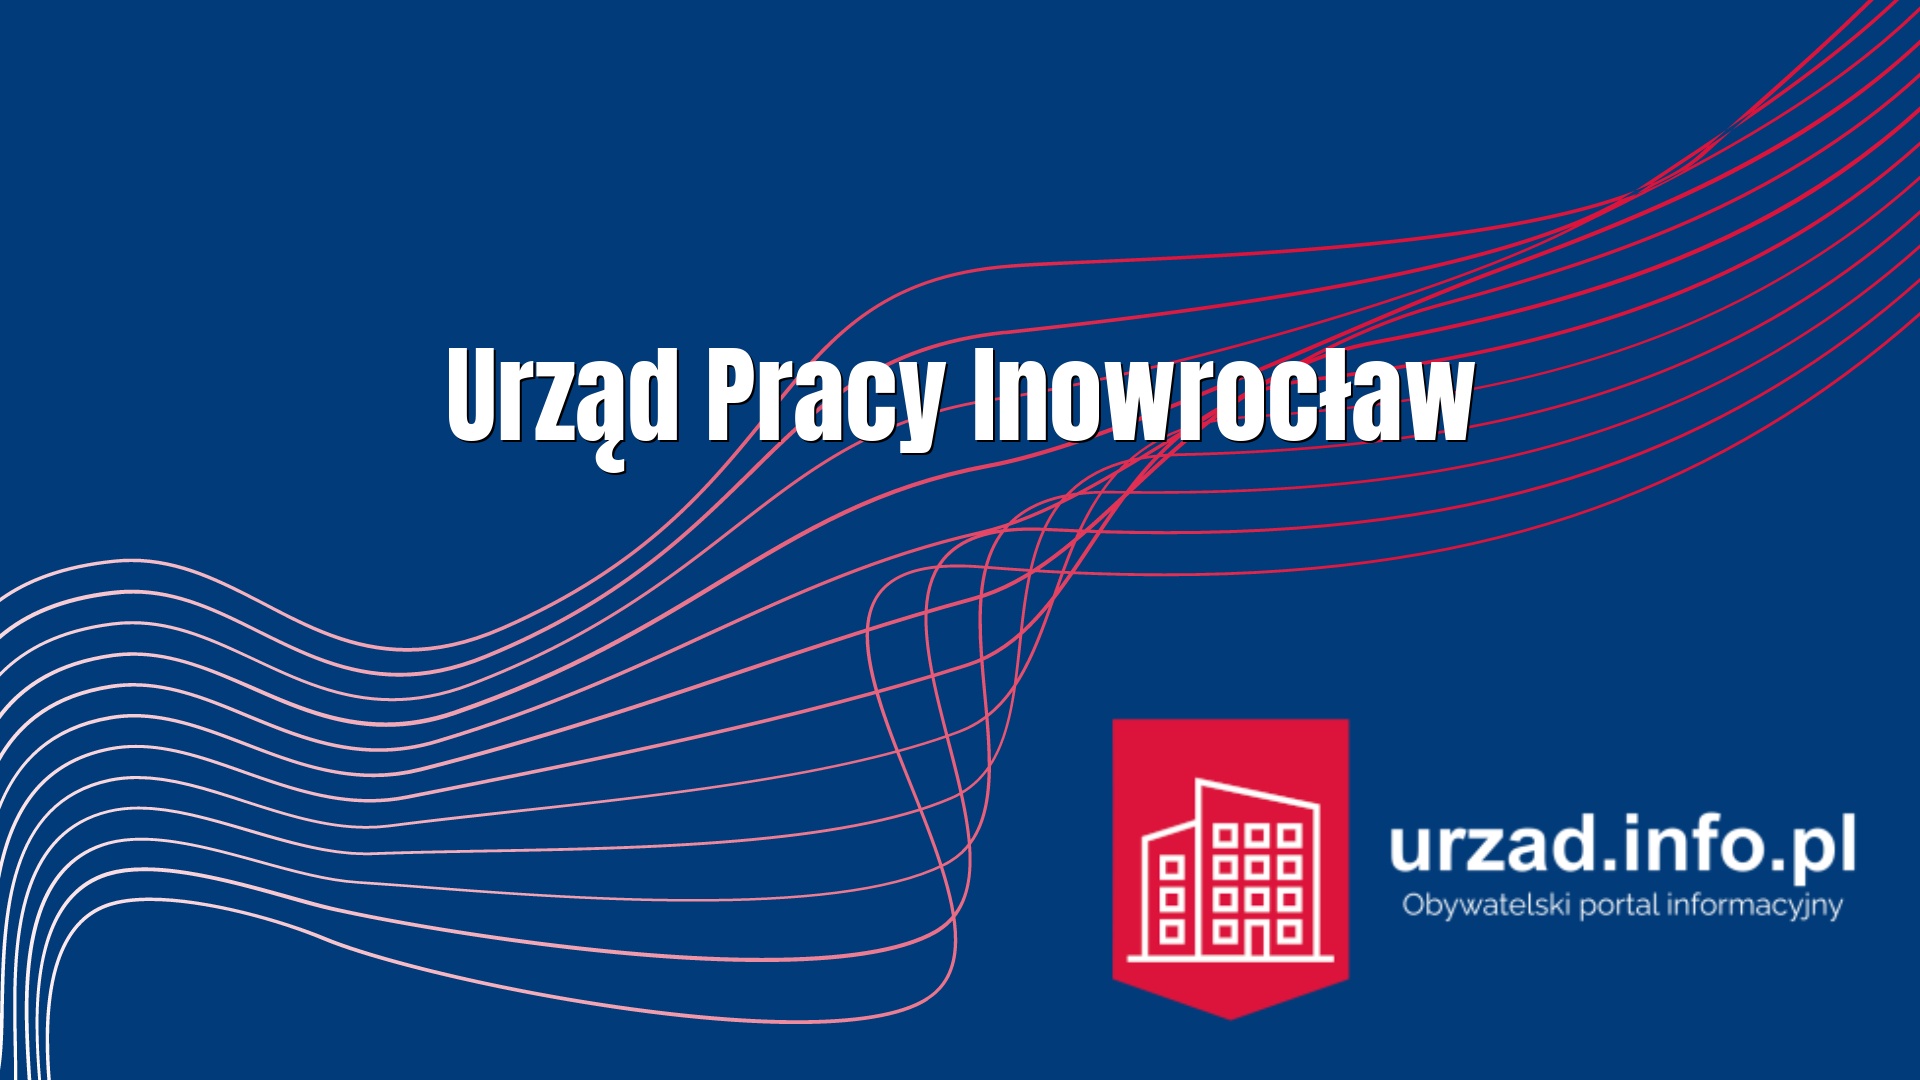 PUP Inowrocław – Powiatowy Urząd Pracy Inowrocław